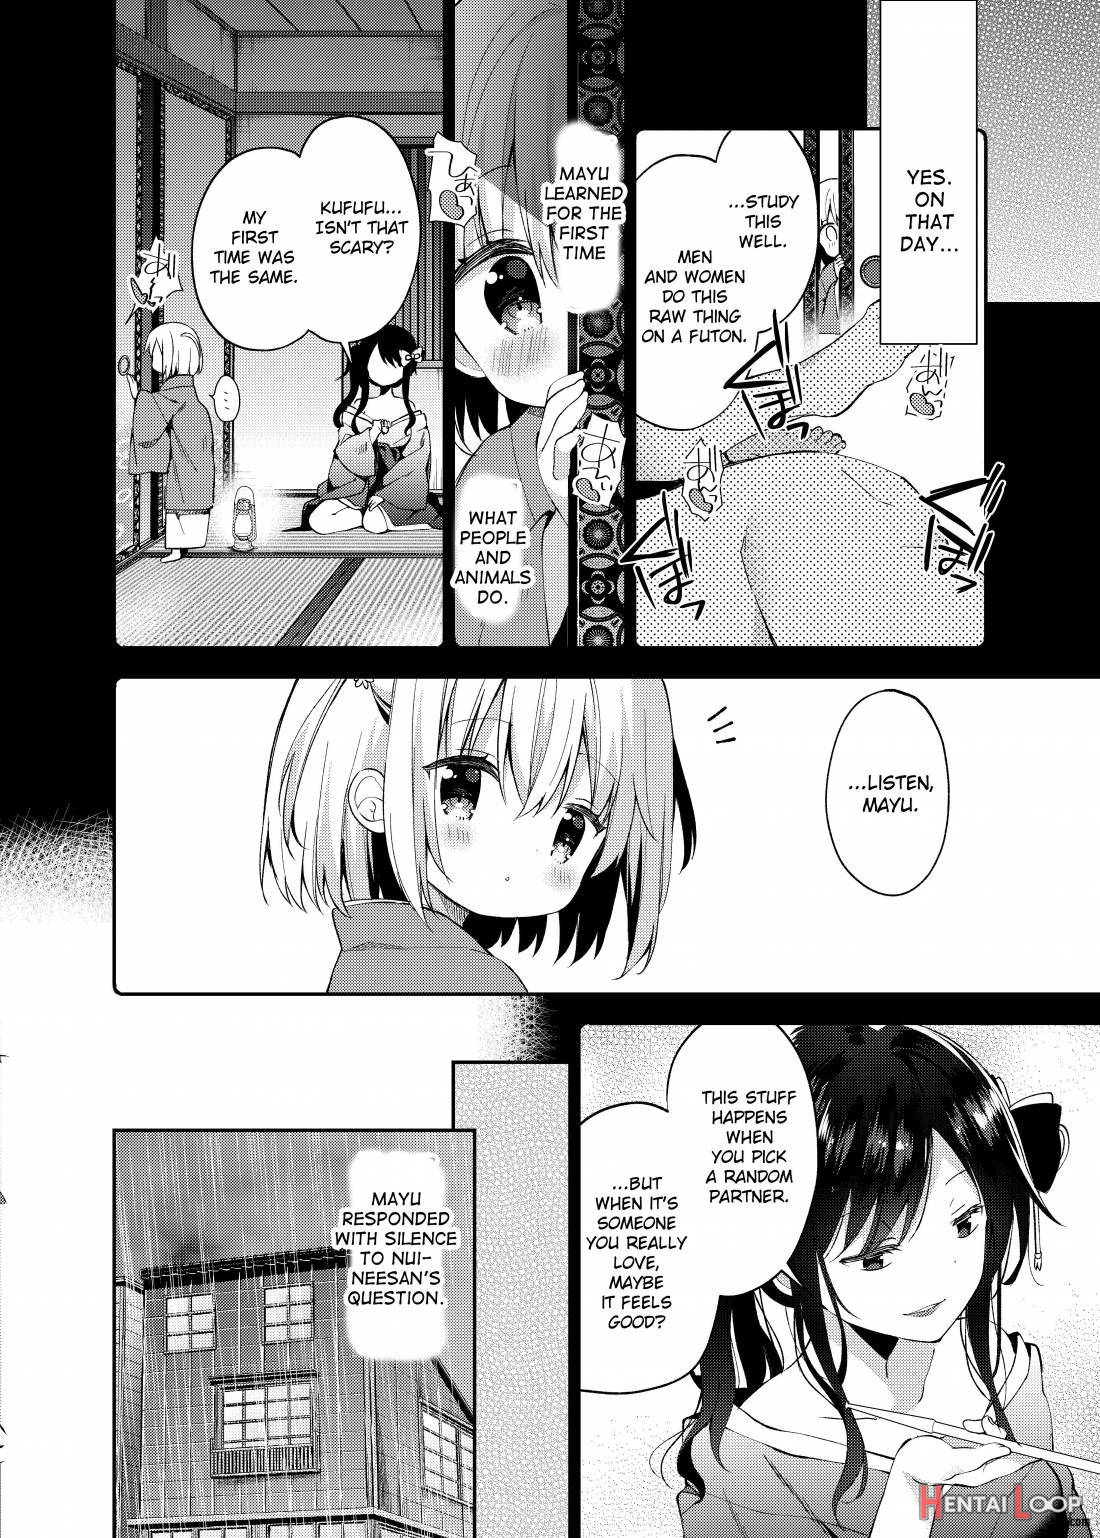 Onnanoko no Mayu 3 -Vita Sexualis- page 15